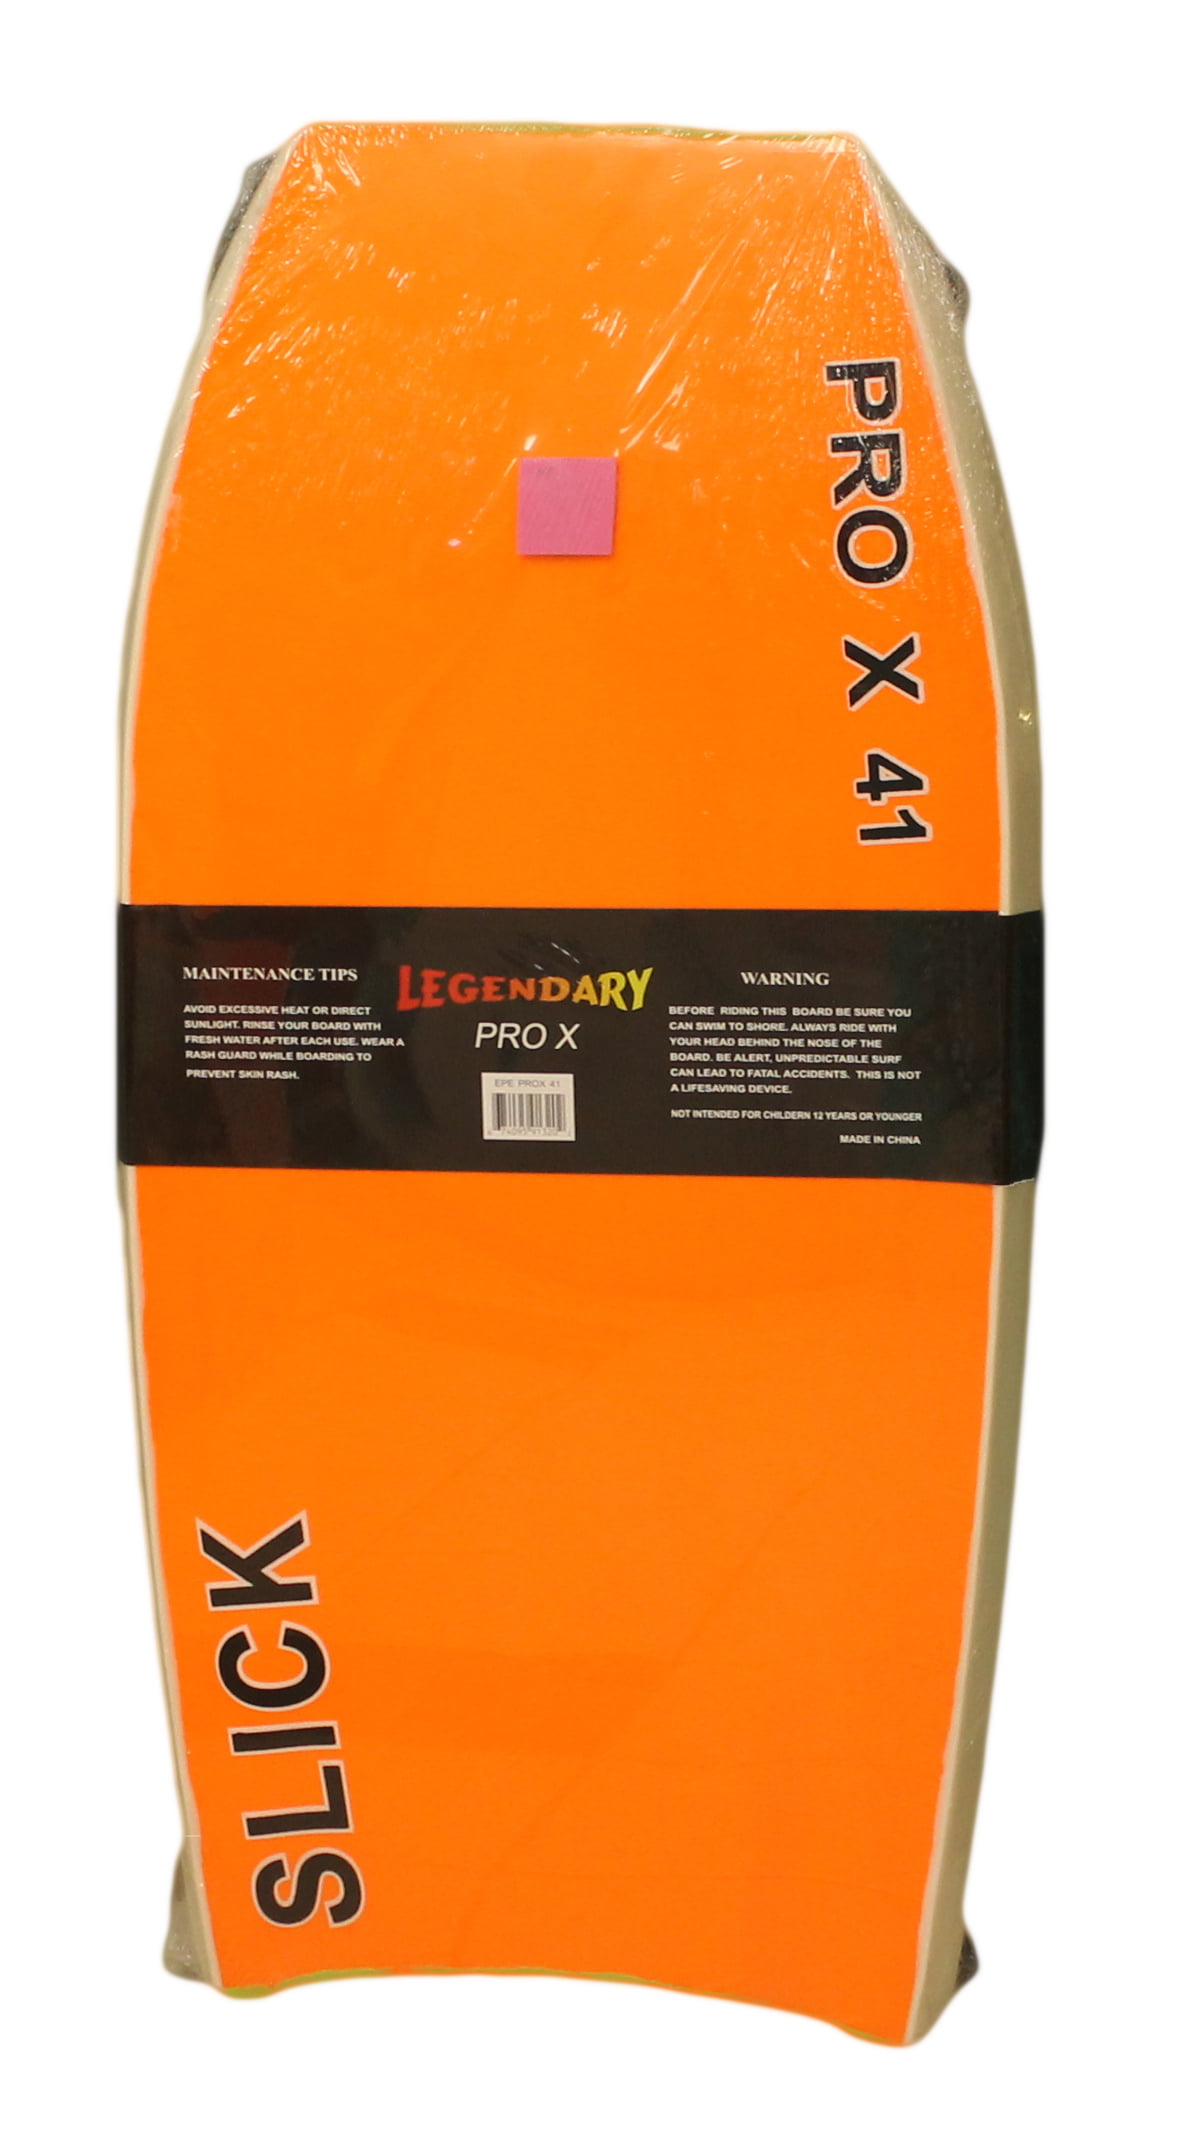 Legendary Pro X Slick Bottom Bodyboard